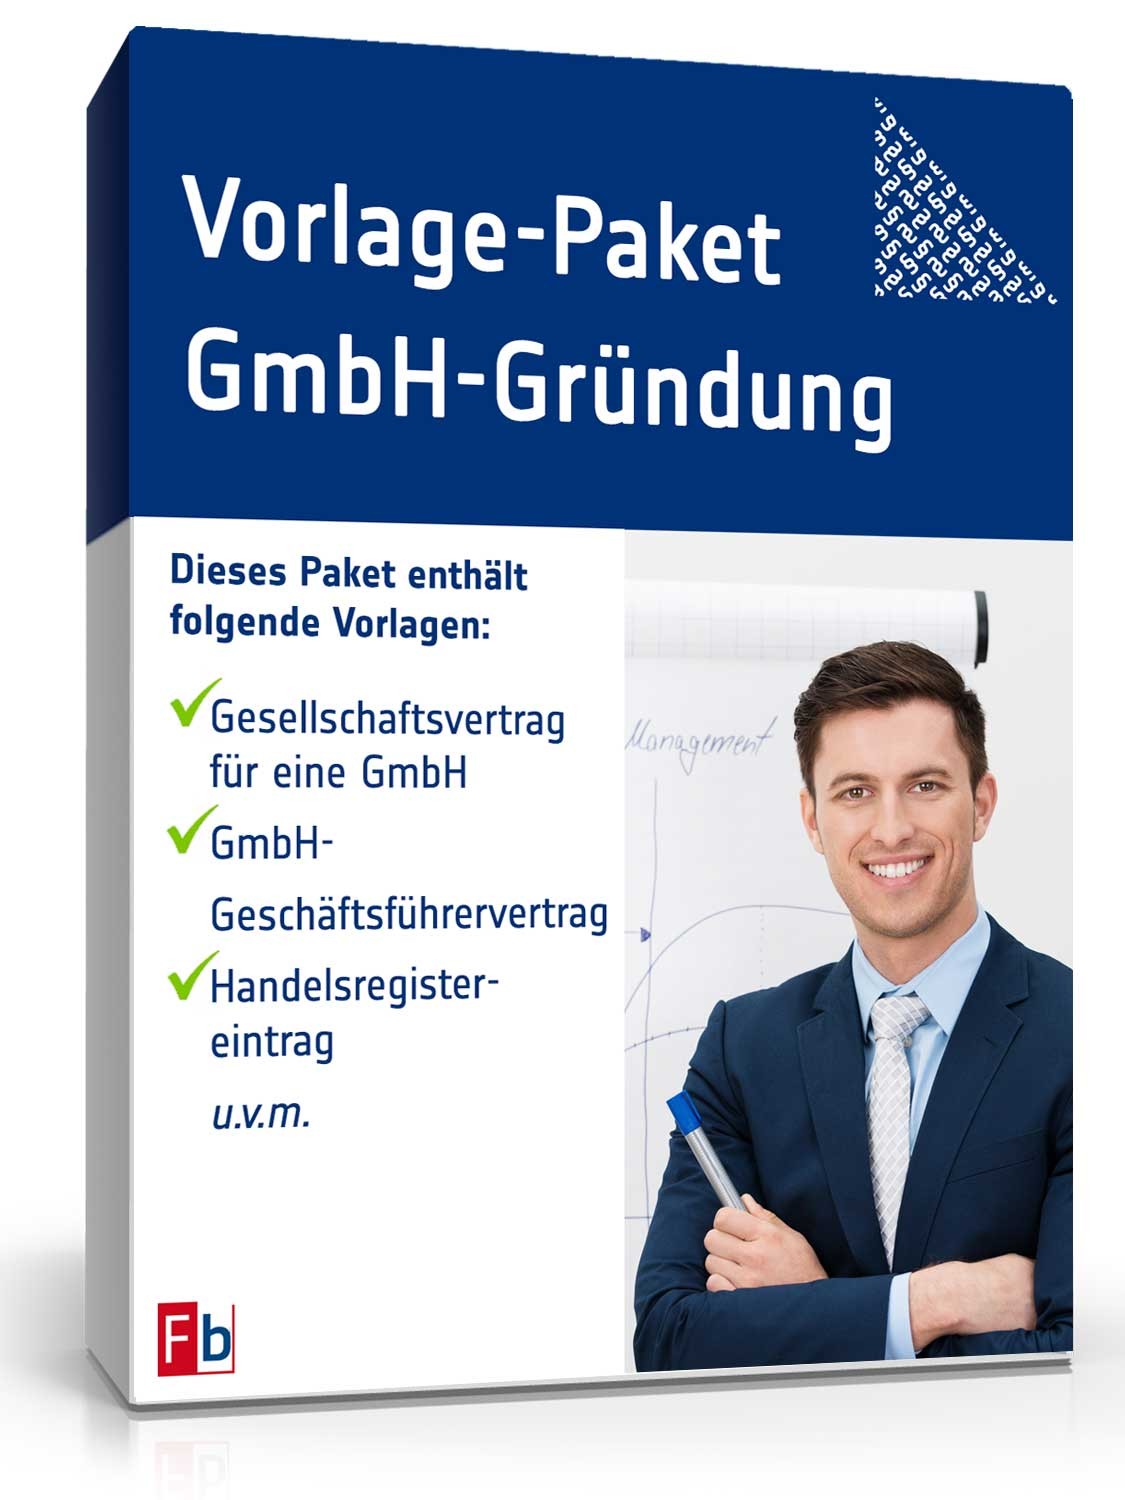 Hauptbild des Produkts: Vorlagen-Paket GmbH-Gründung